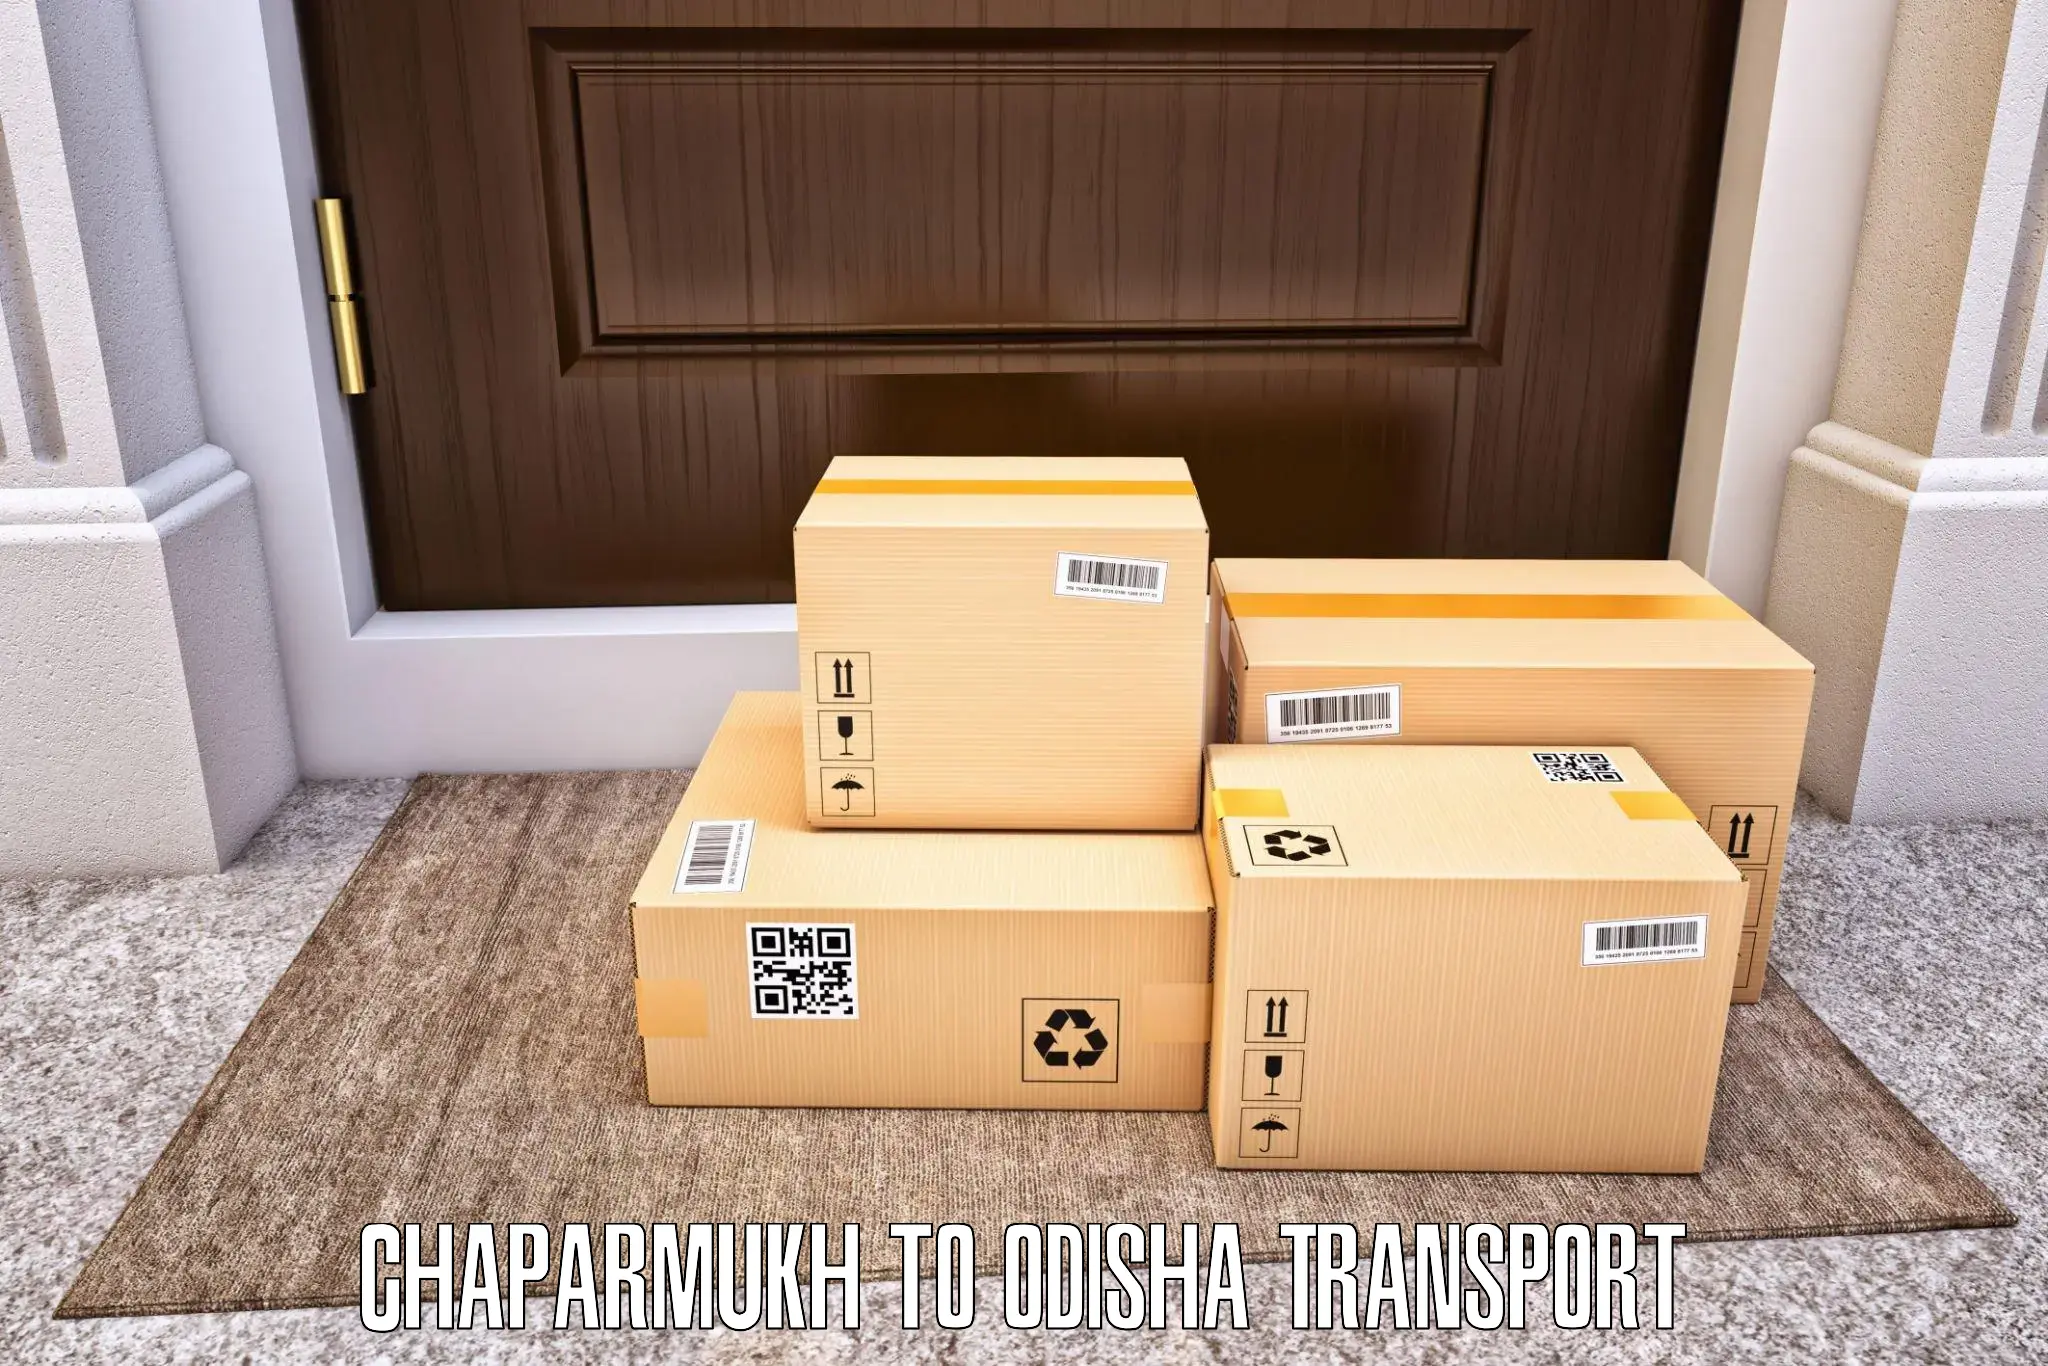 Shipping services Chaparmukh to Odisha